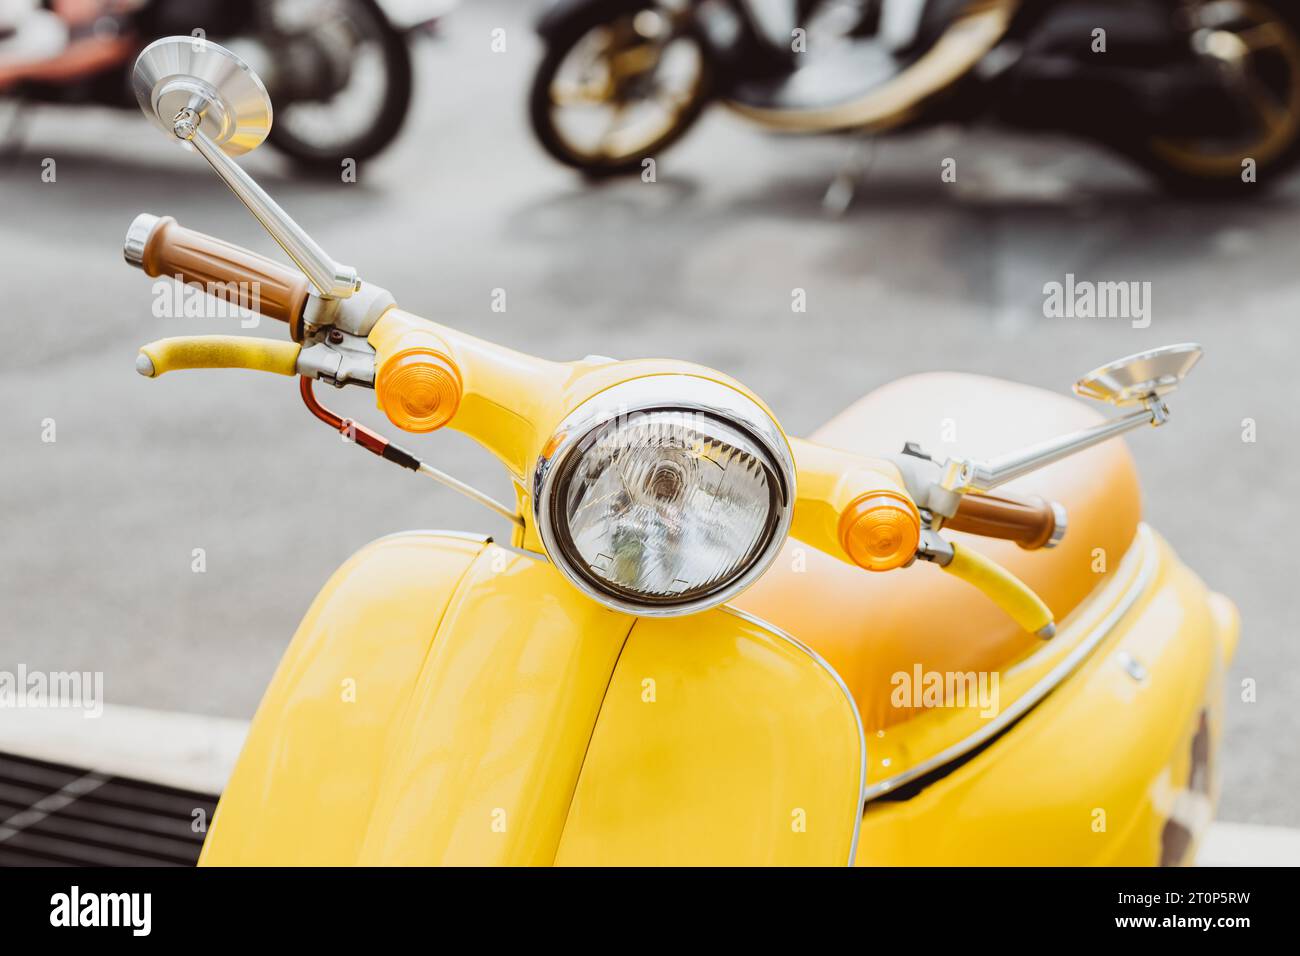 moderno mini scooter, motocicletta, classico arredamento in stile retrò d'epoca, più popolare in molti paesi Foto Stock